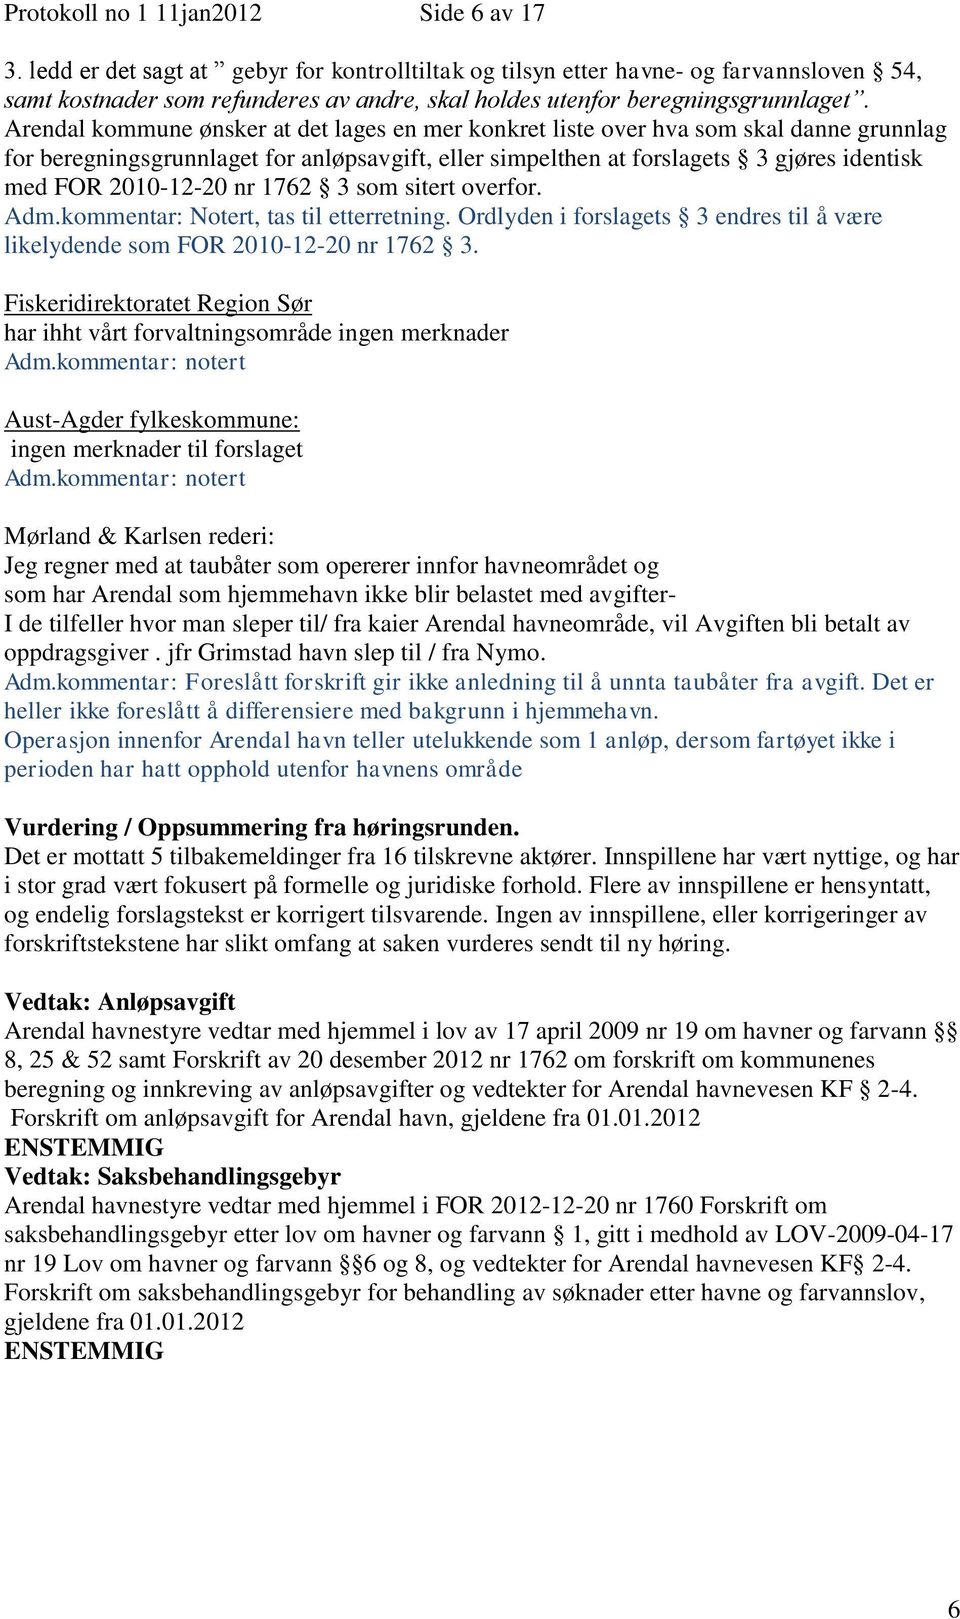 Arendal kommune ønsker at det lages en mer konkret liste over hva som skal danne grunnlag for beregningsgrunnlaget for anløpsavgift, eller simpelthen at forslagets 3 gjøres identisk med FOR